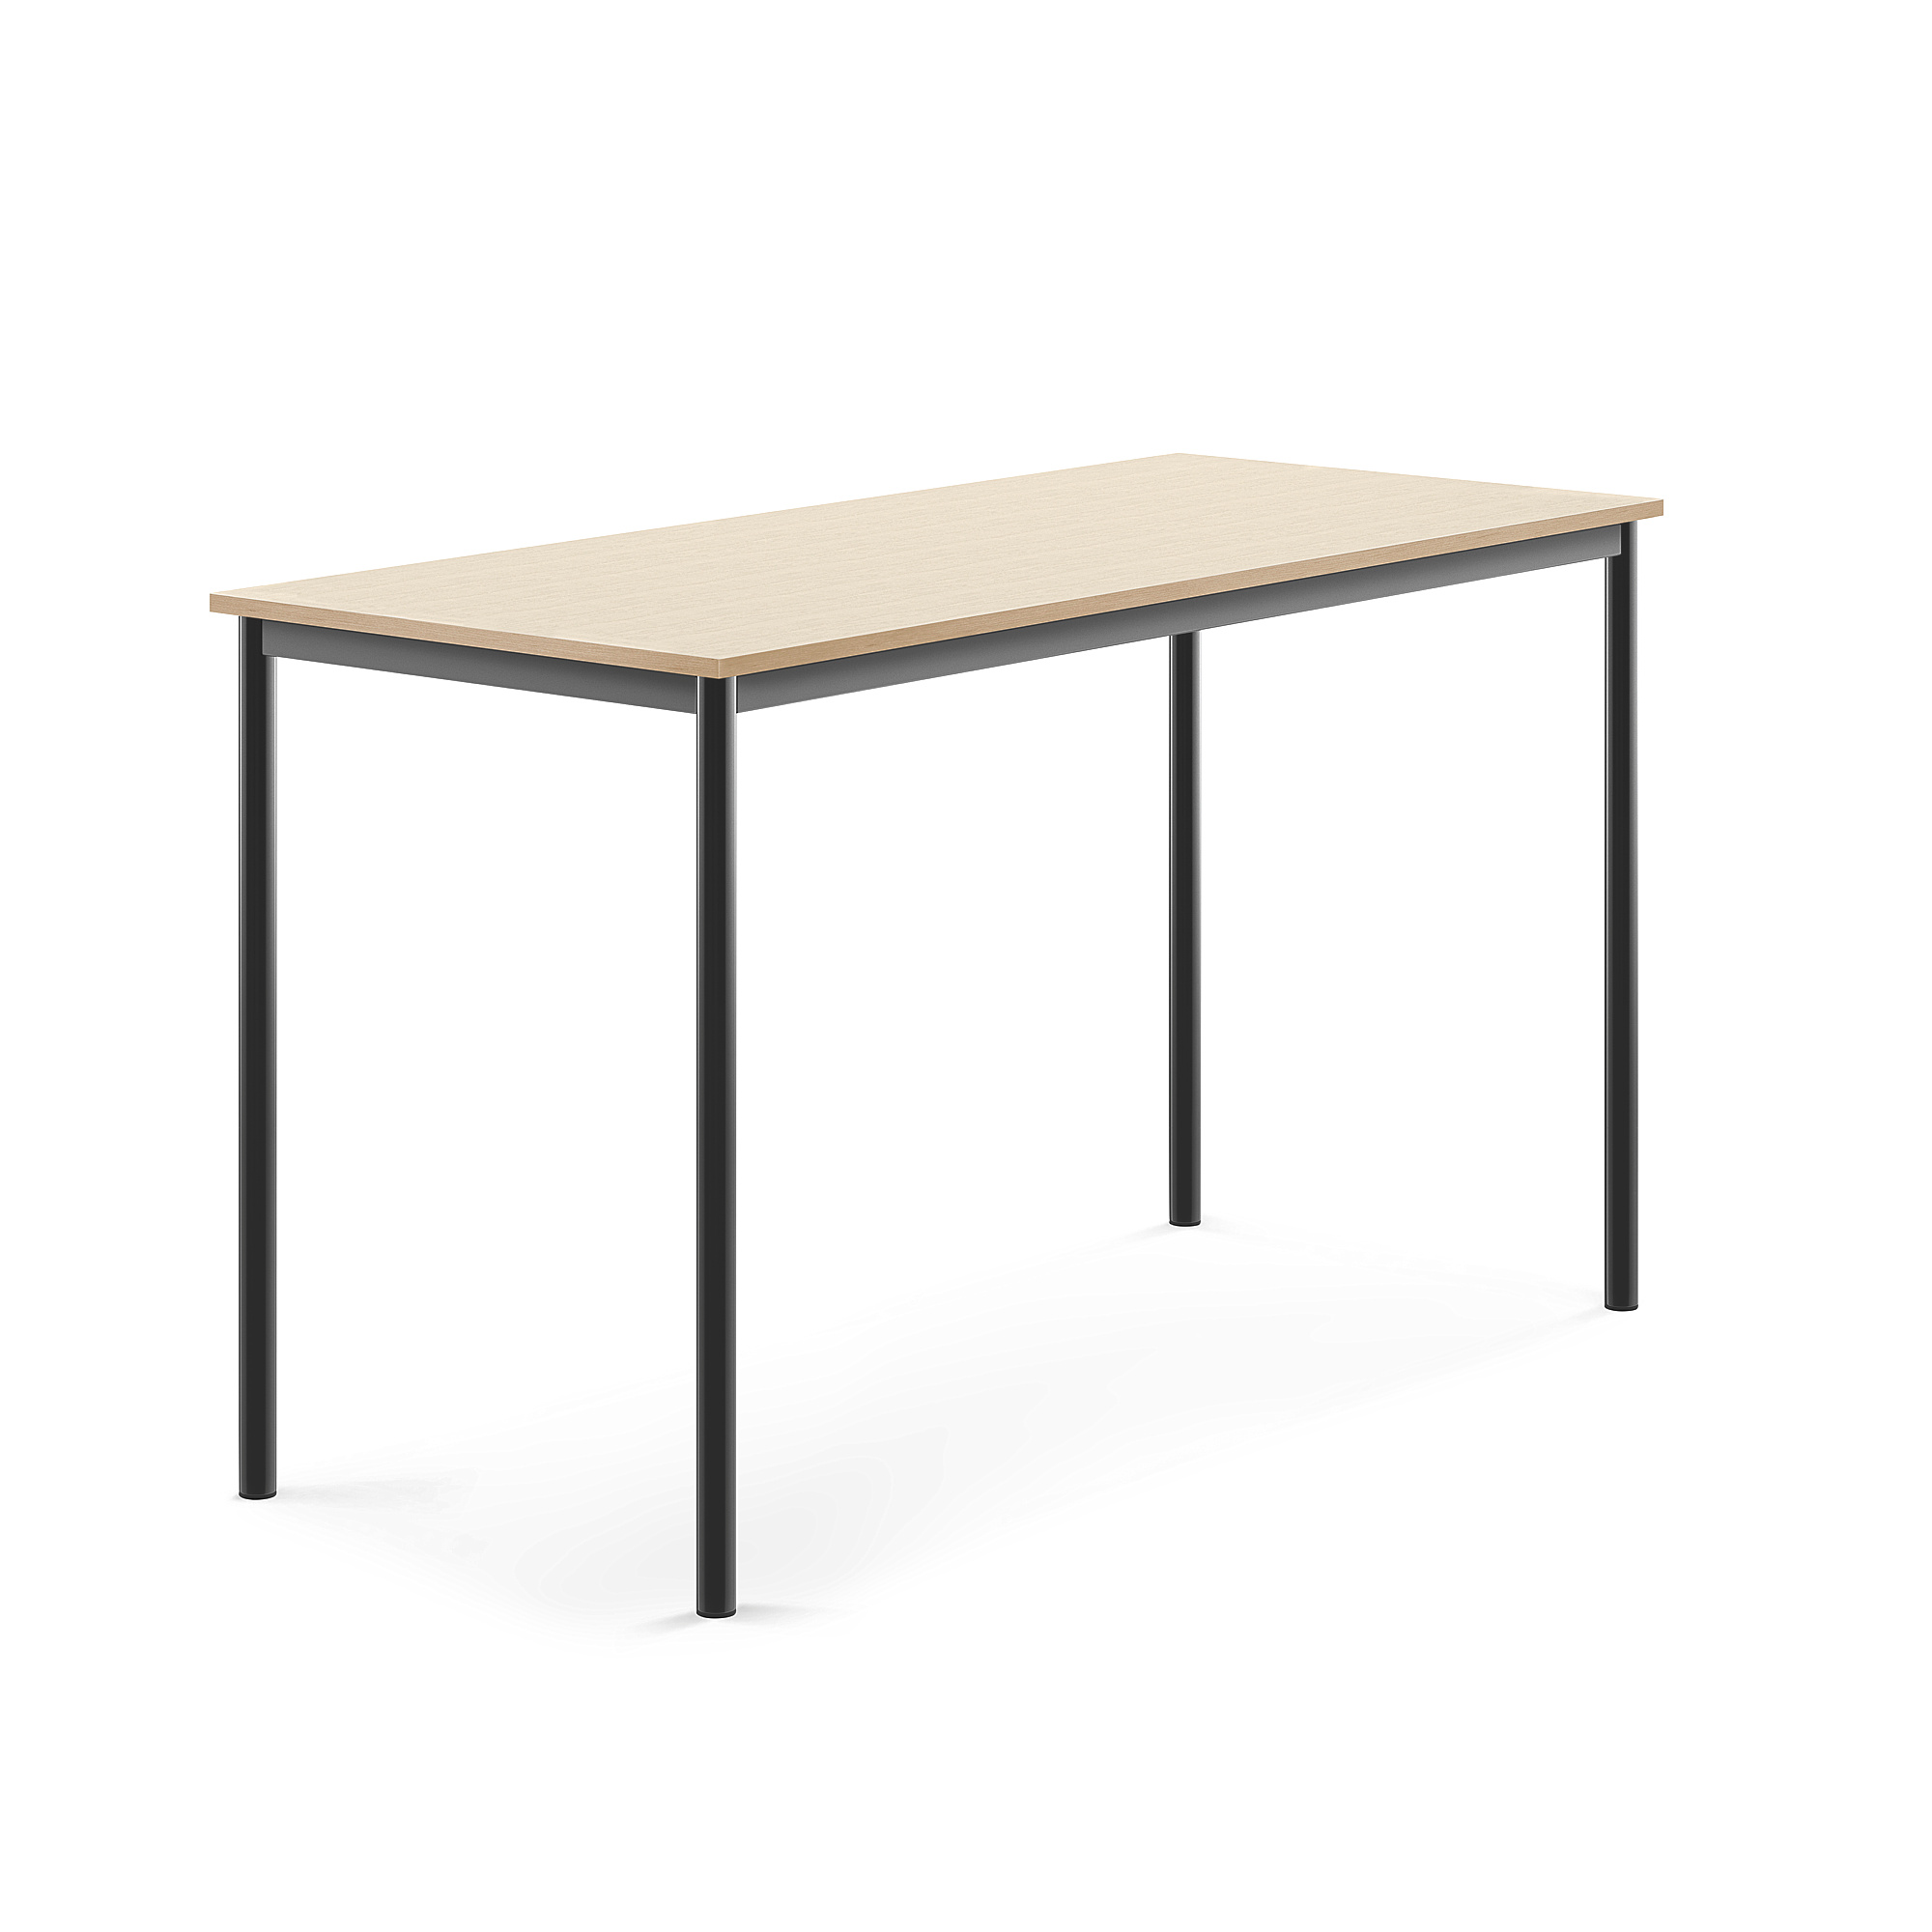 Stůl BORÅS, 1600x700x900 mm, antracitově šedé nohy, HPL deska, bříza